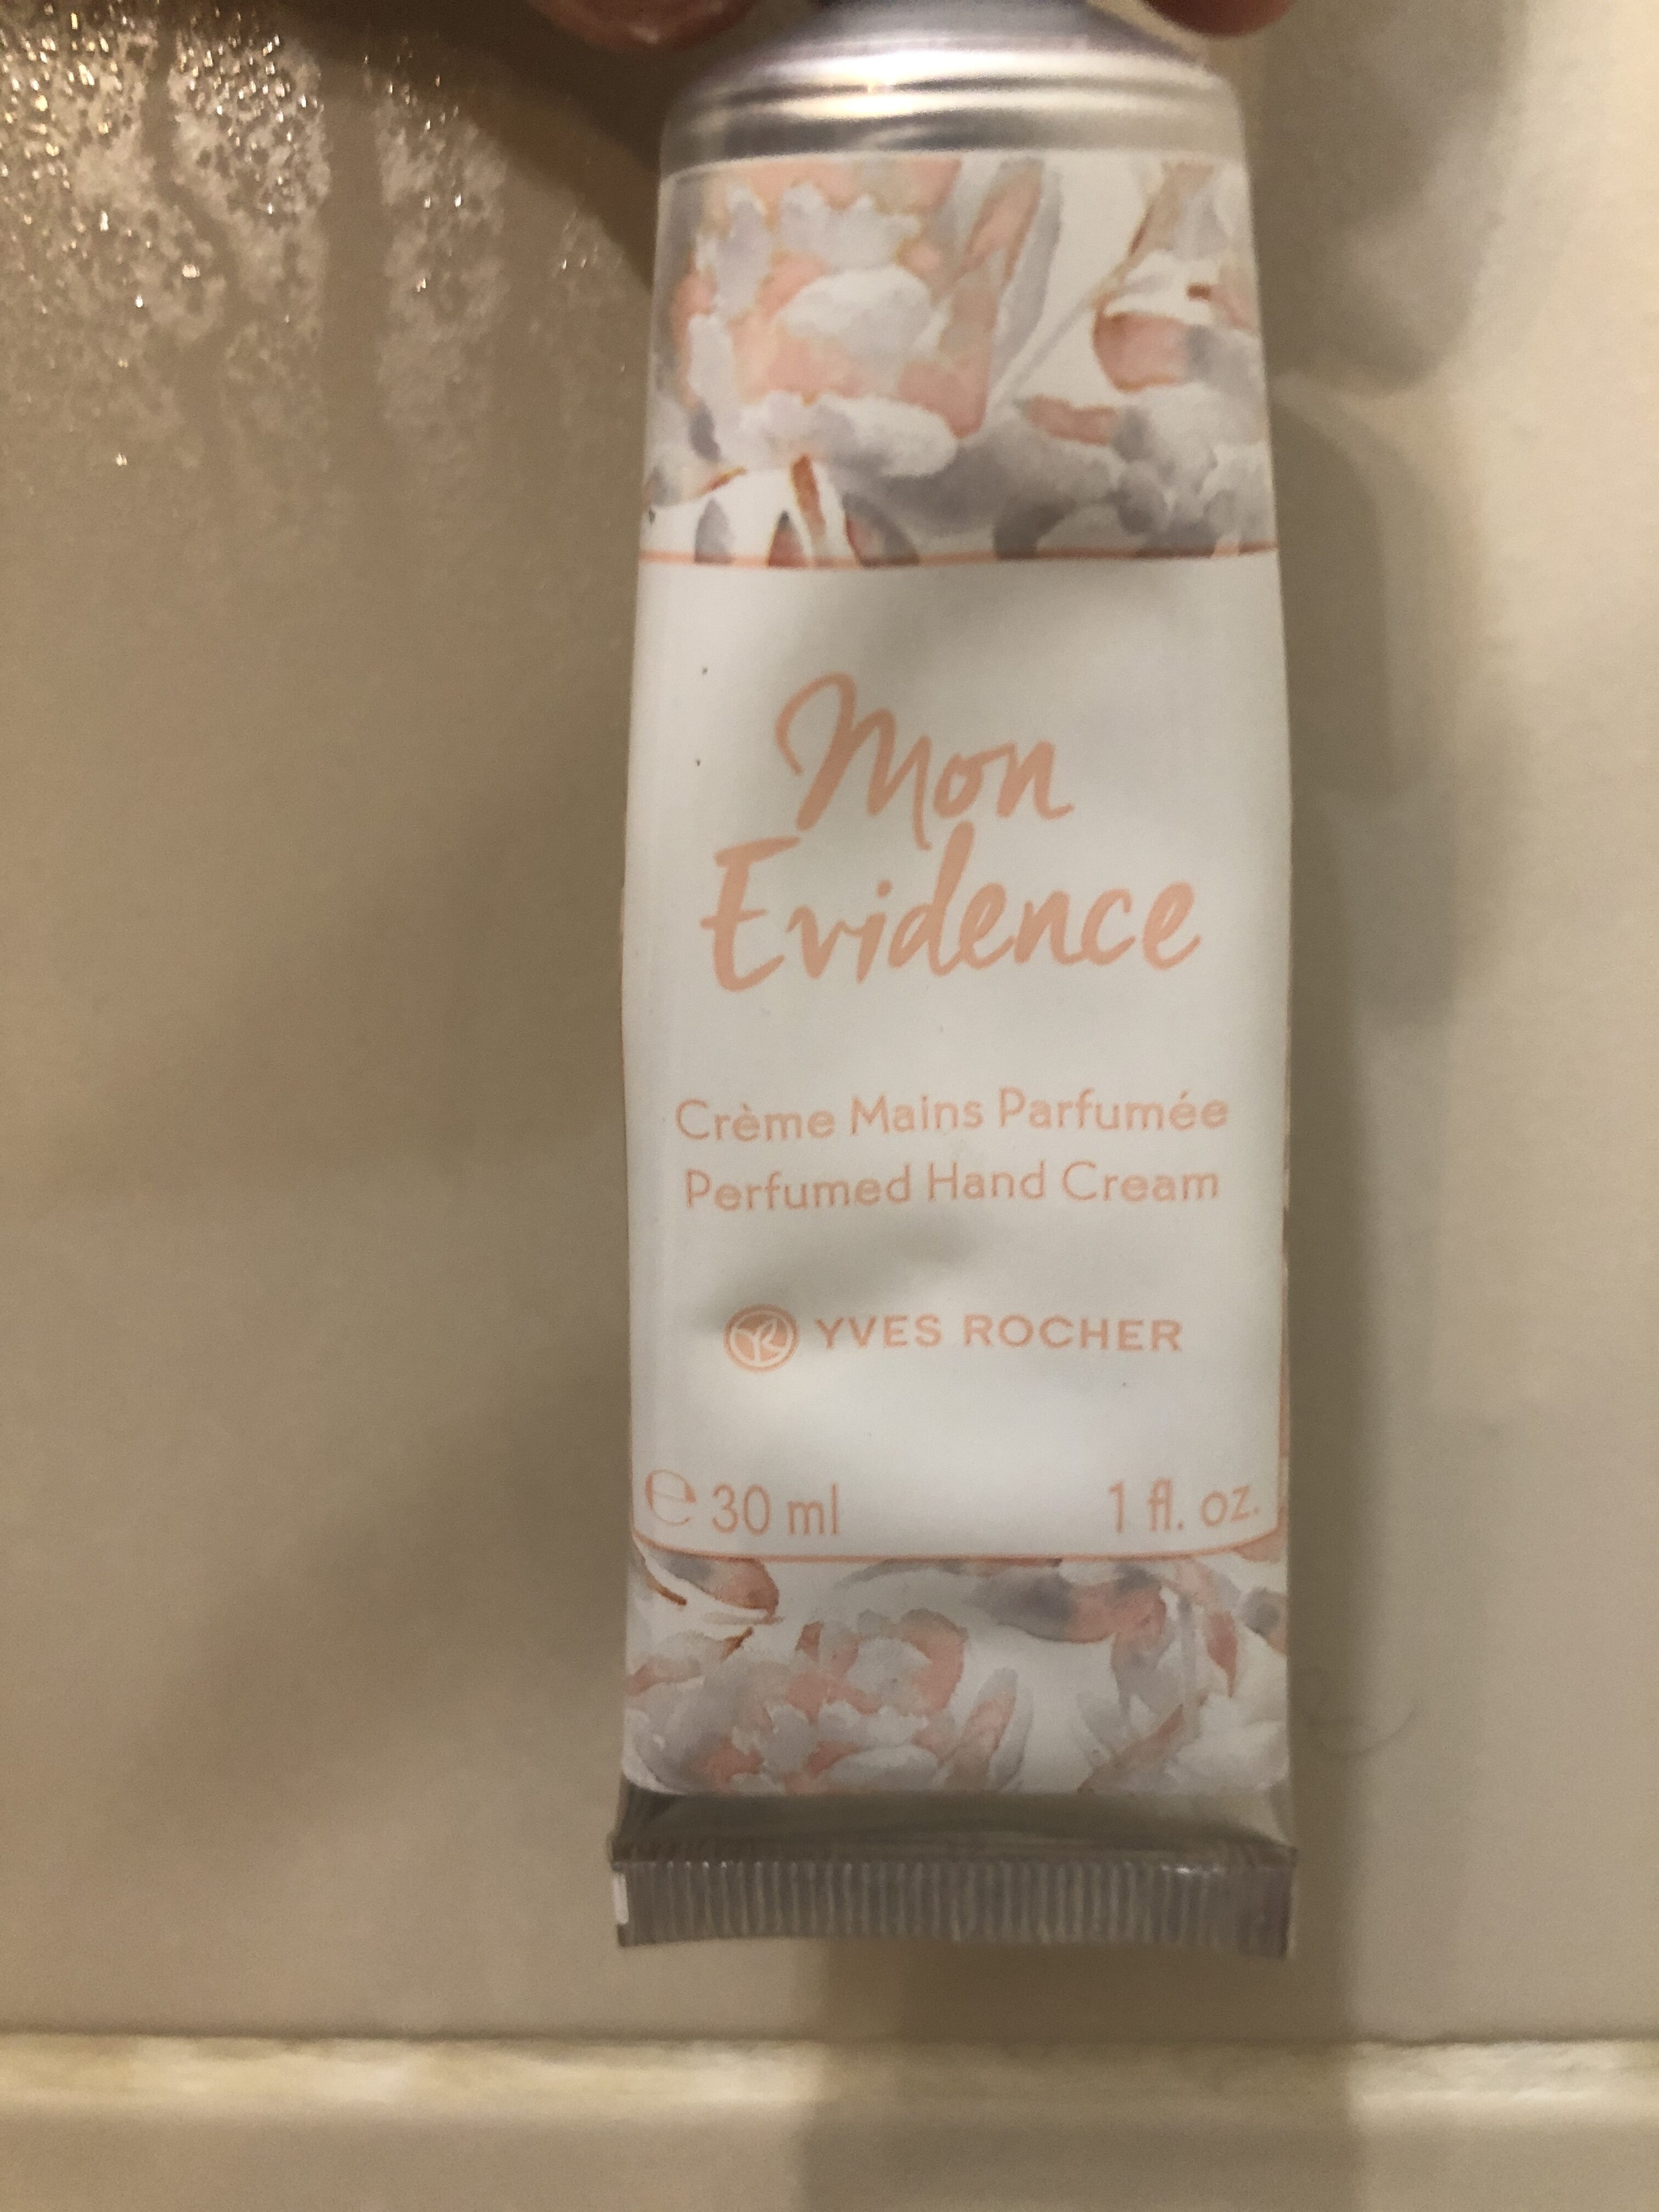 Crème mains parfumée - Produkt - fr